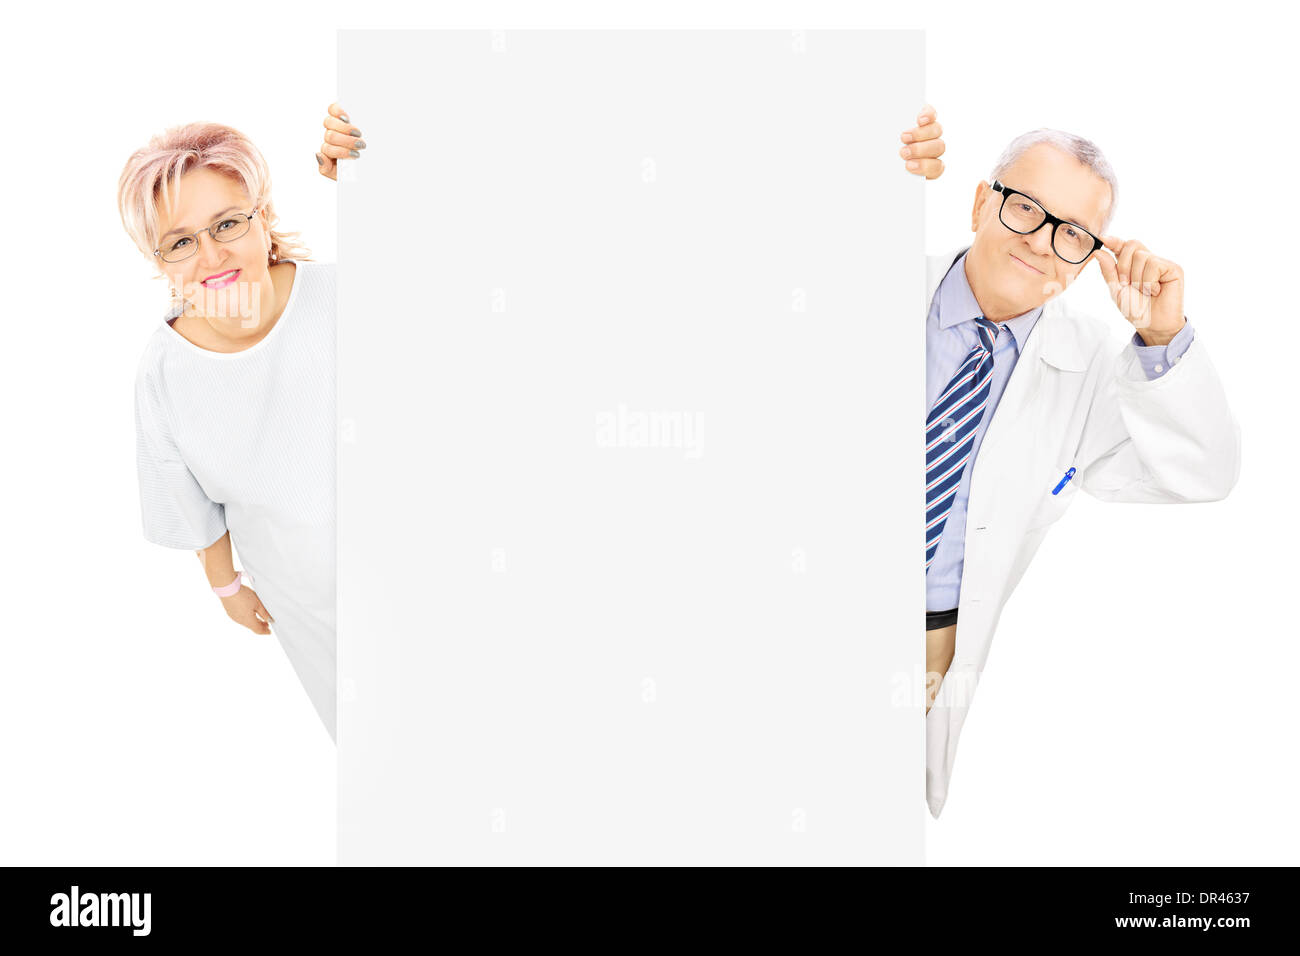 Médecin homme d'âge moyen et les femmes se tenant derrière patient panneau vierge Banque D'Images